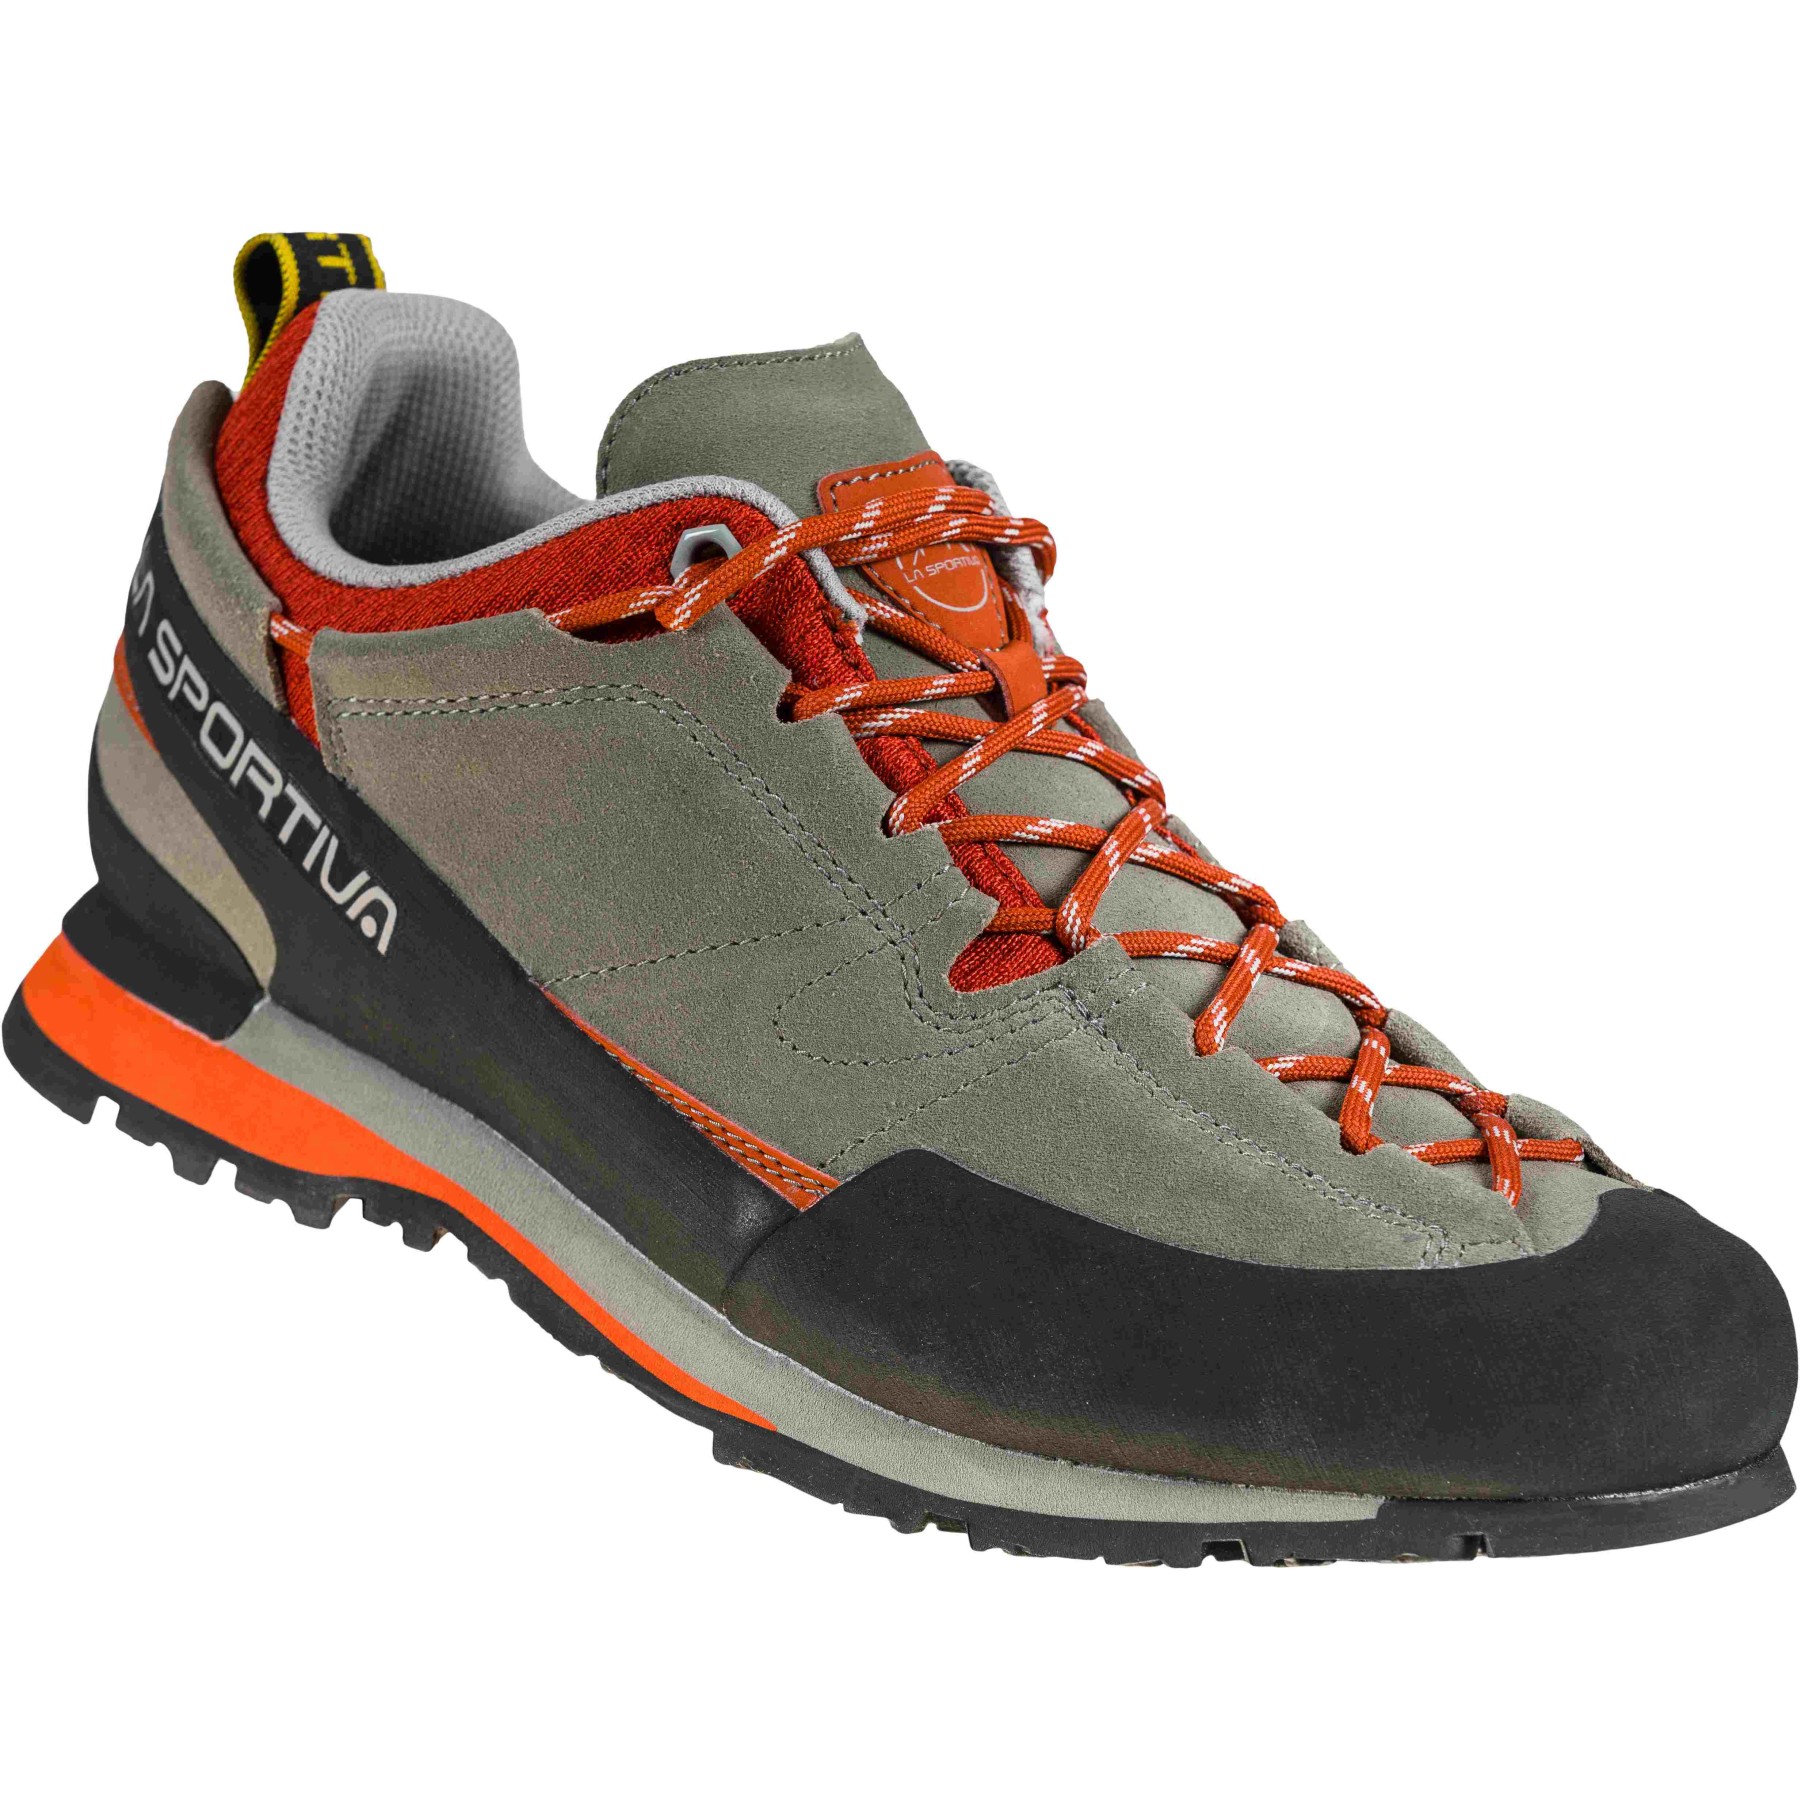 Picture of La Sportiva Boulder X Approach Shoes Men - Clay/Saffron